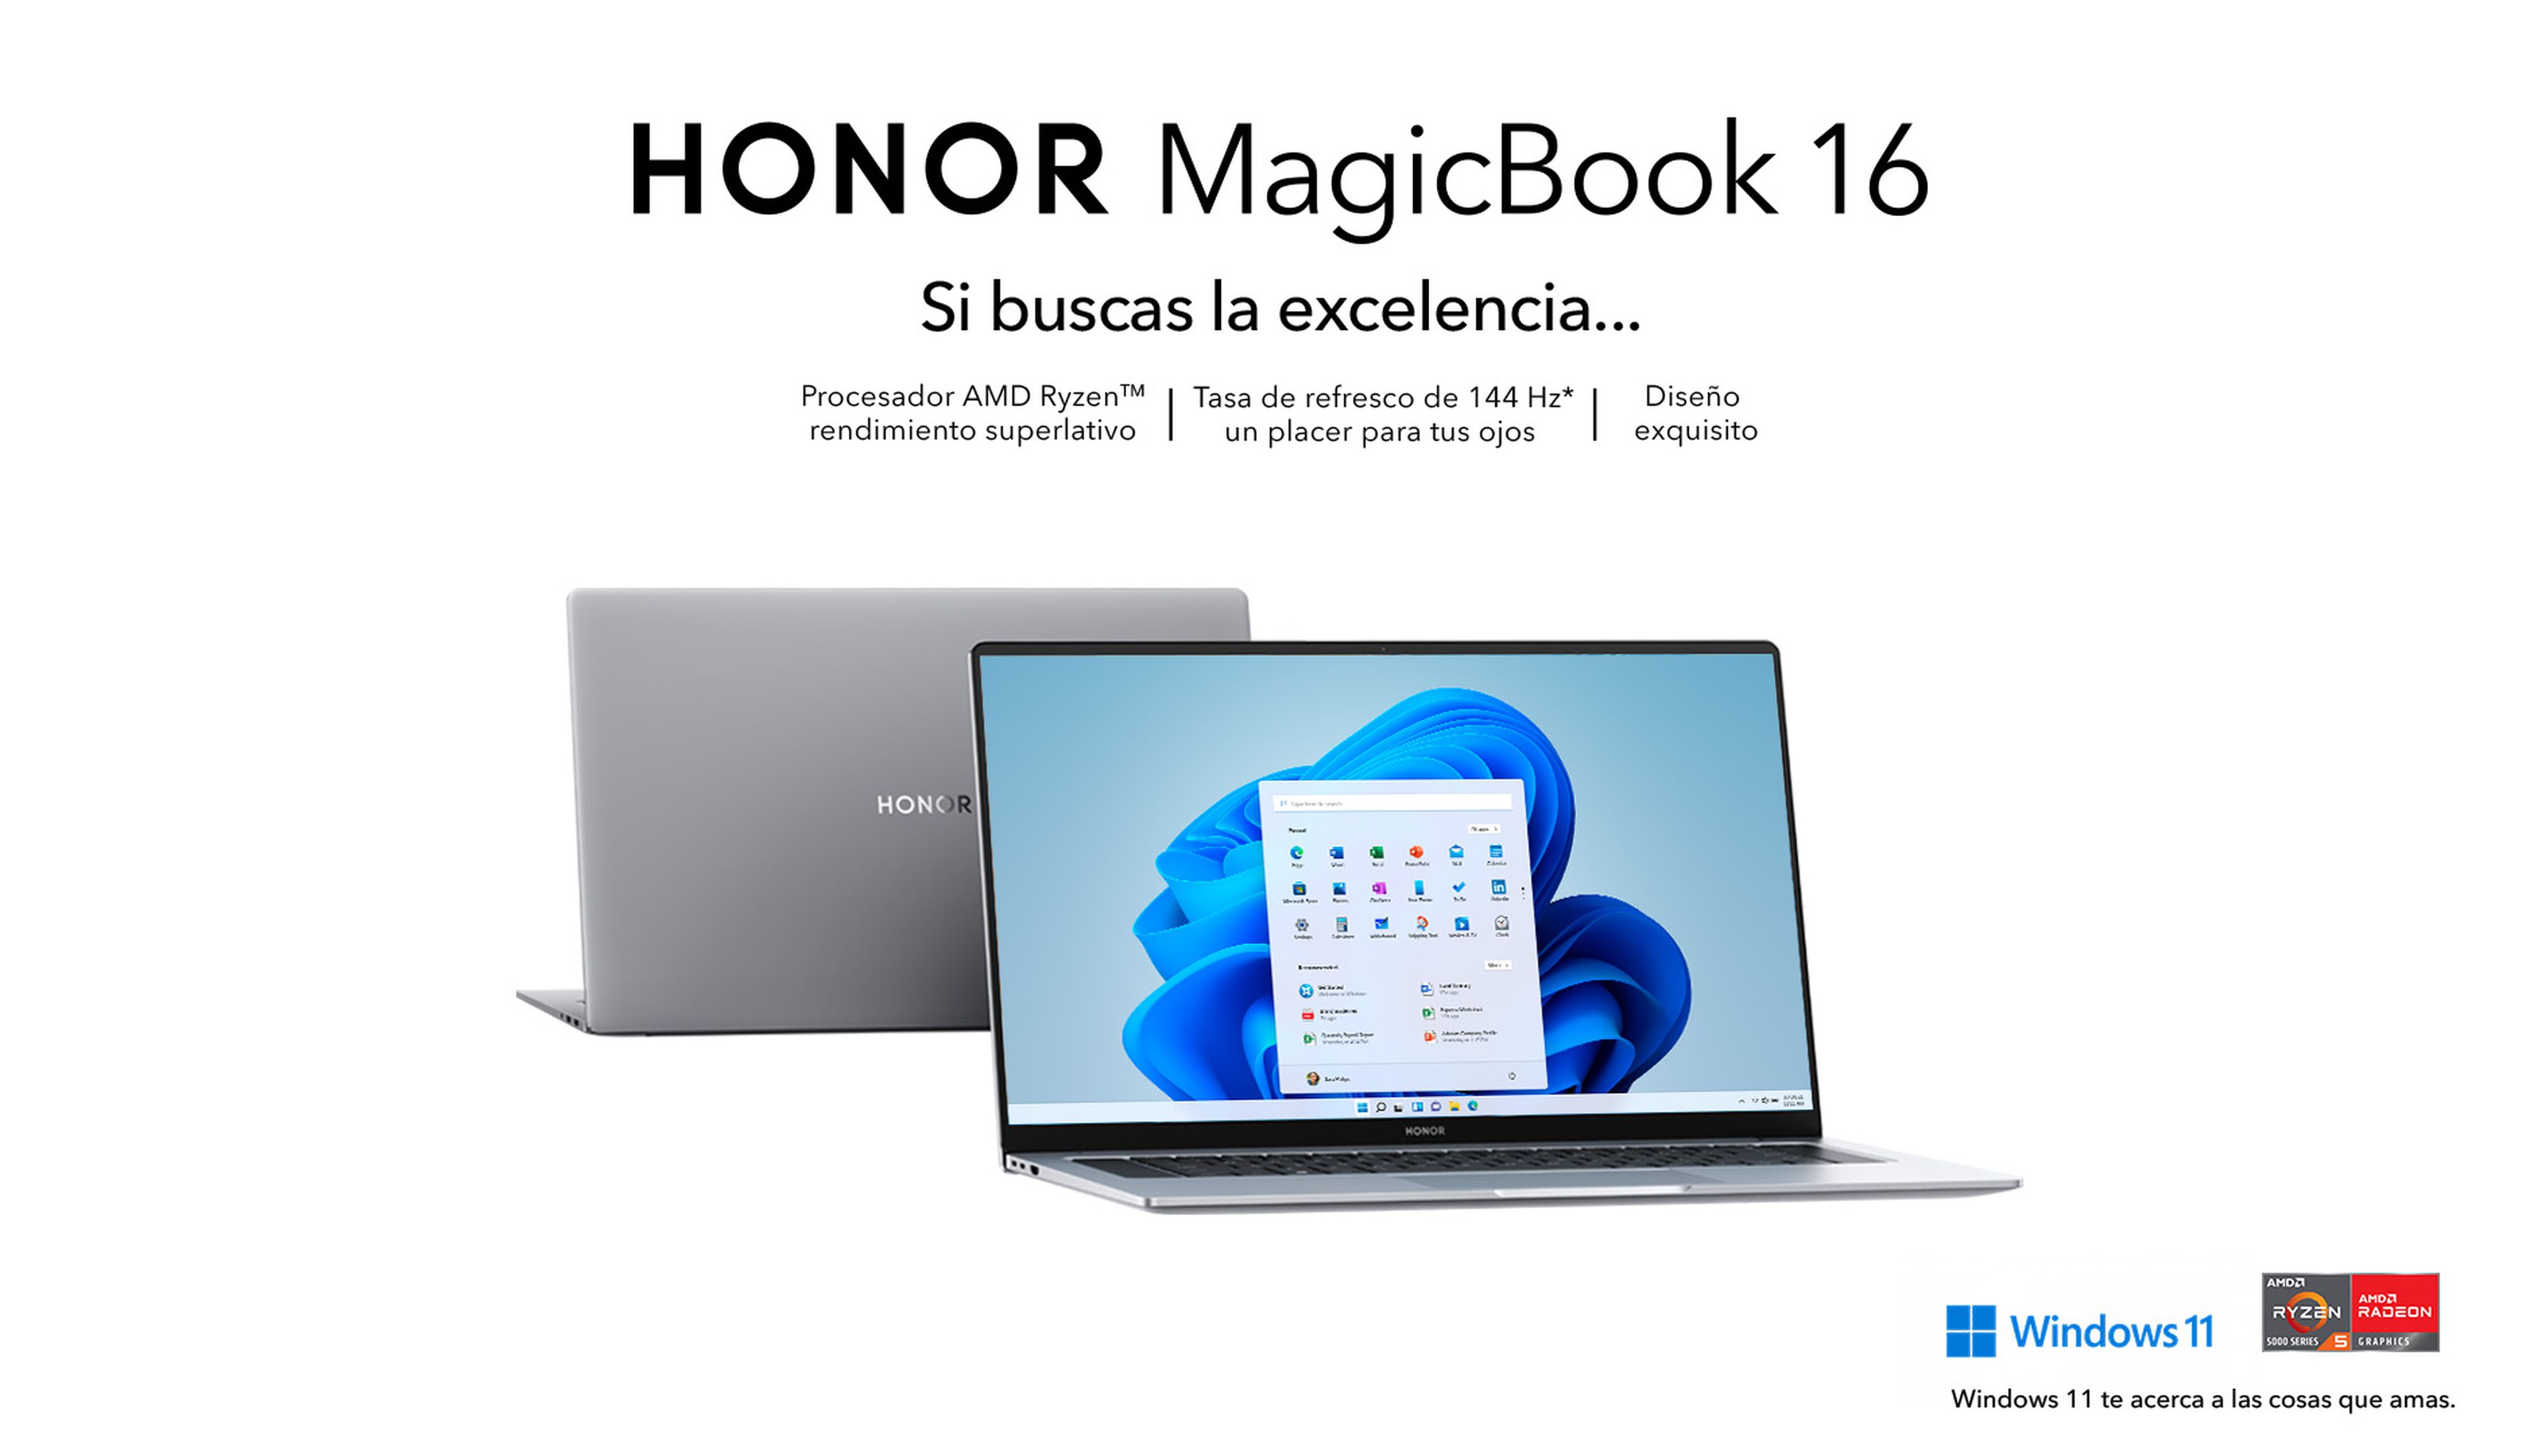 La nueva serie de portátiles MagicBook de HONOR tiene todo lo que necesitas, seas el tipo de usuario que seas